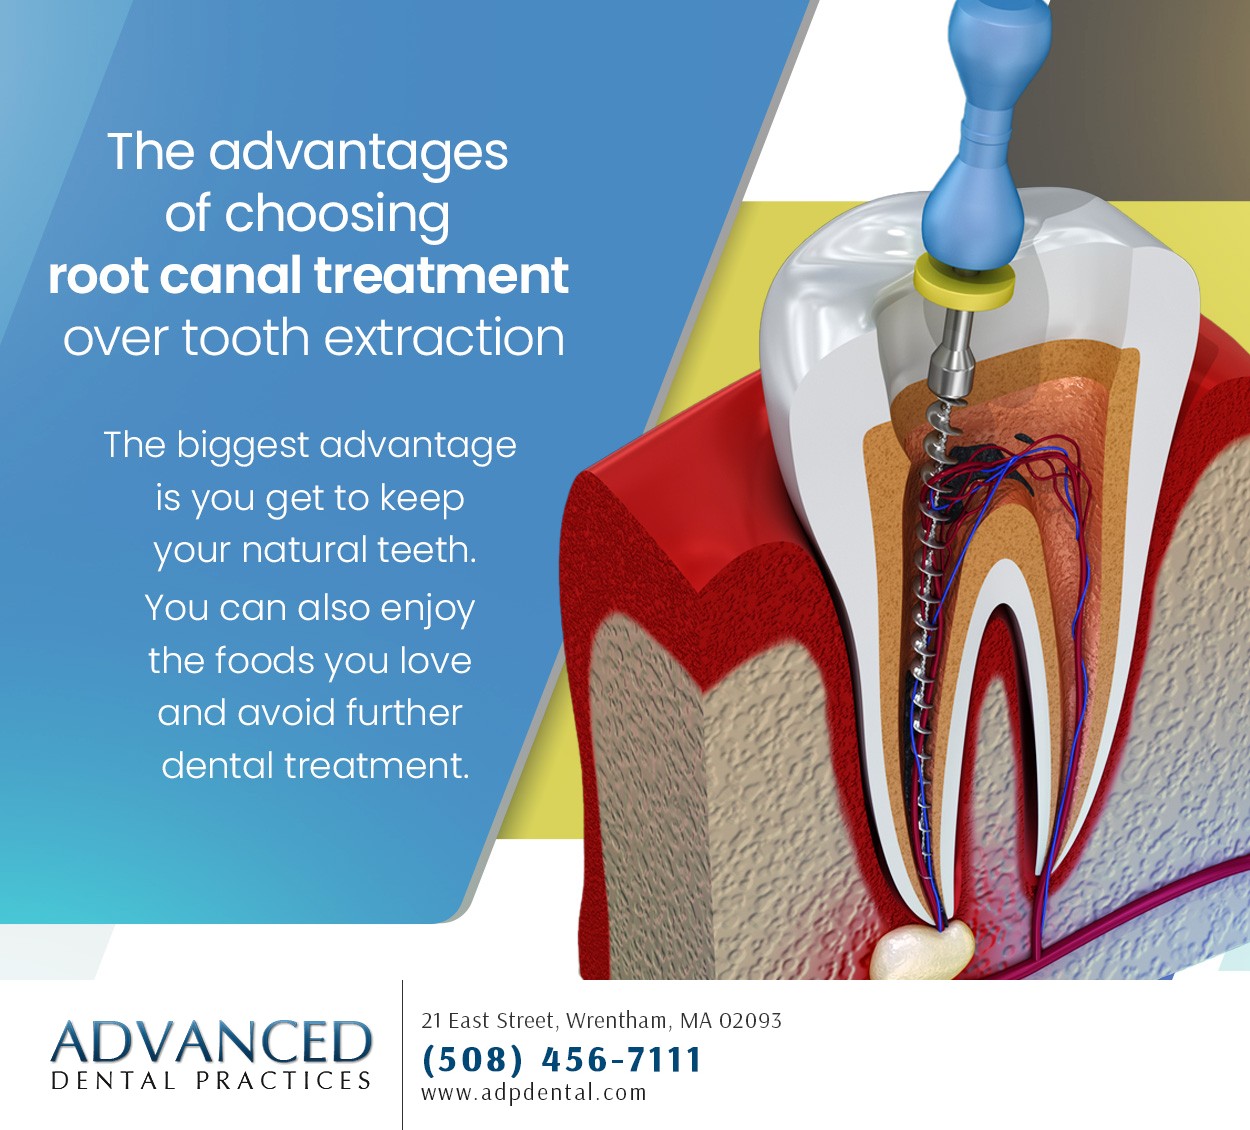 Advanced Dental Practices 21 East St, Wrentham Massachusetts 02093